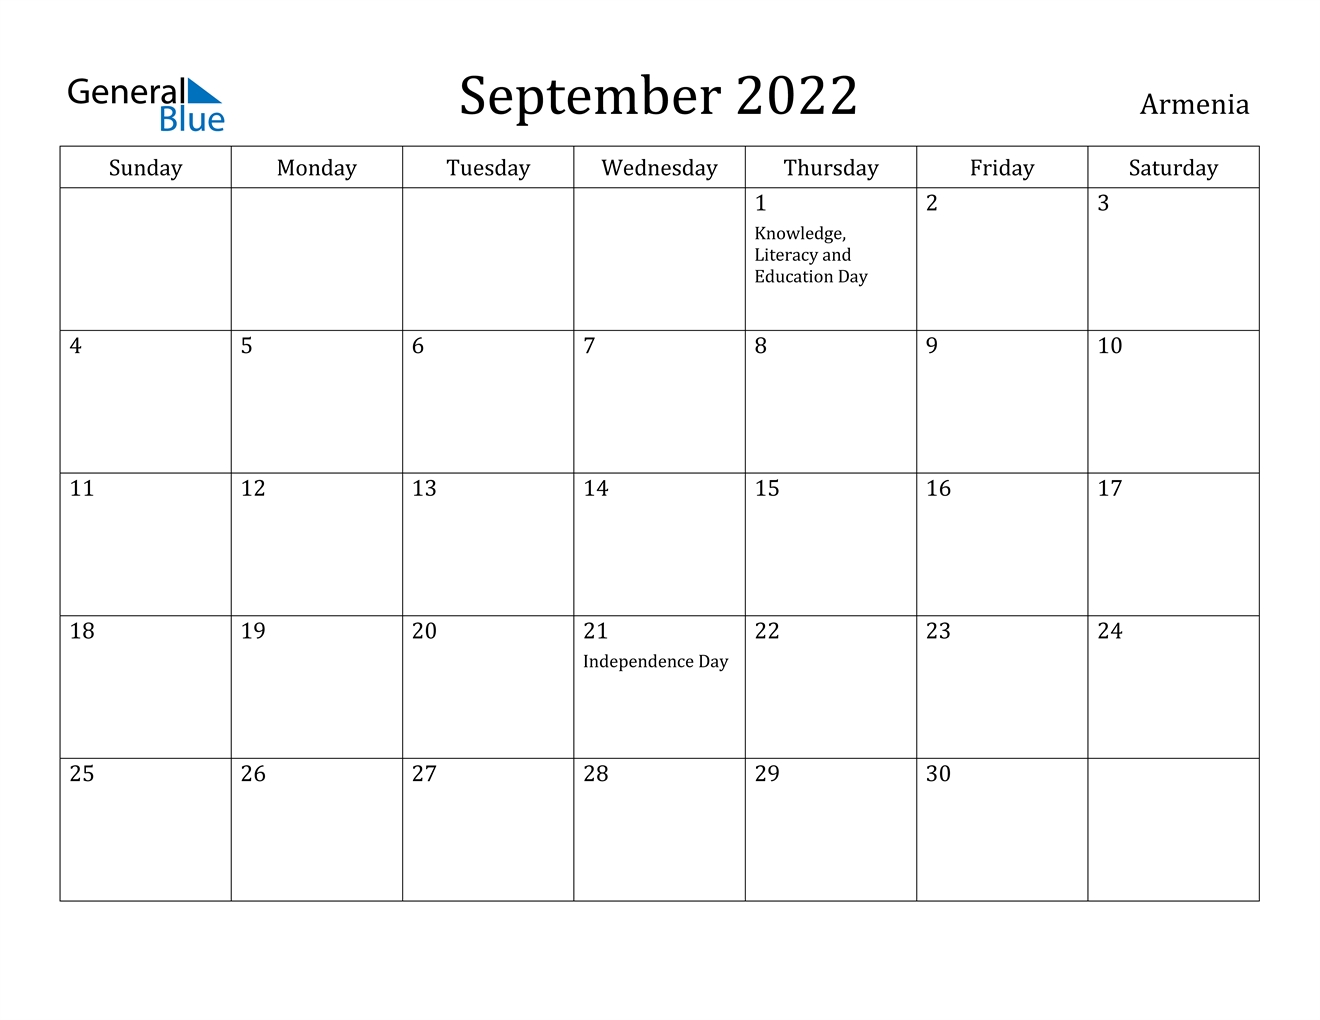 September 2022 Calendar - Armenia